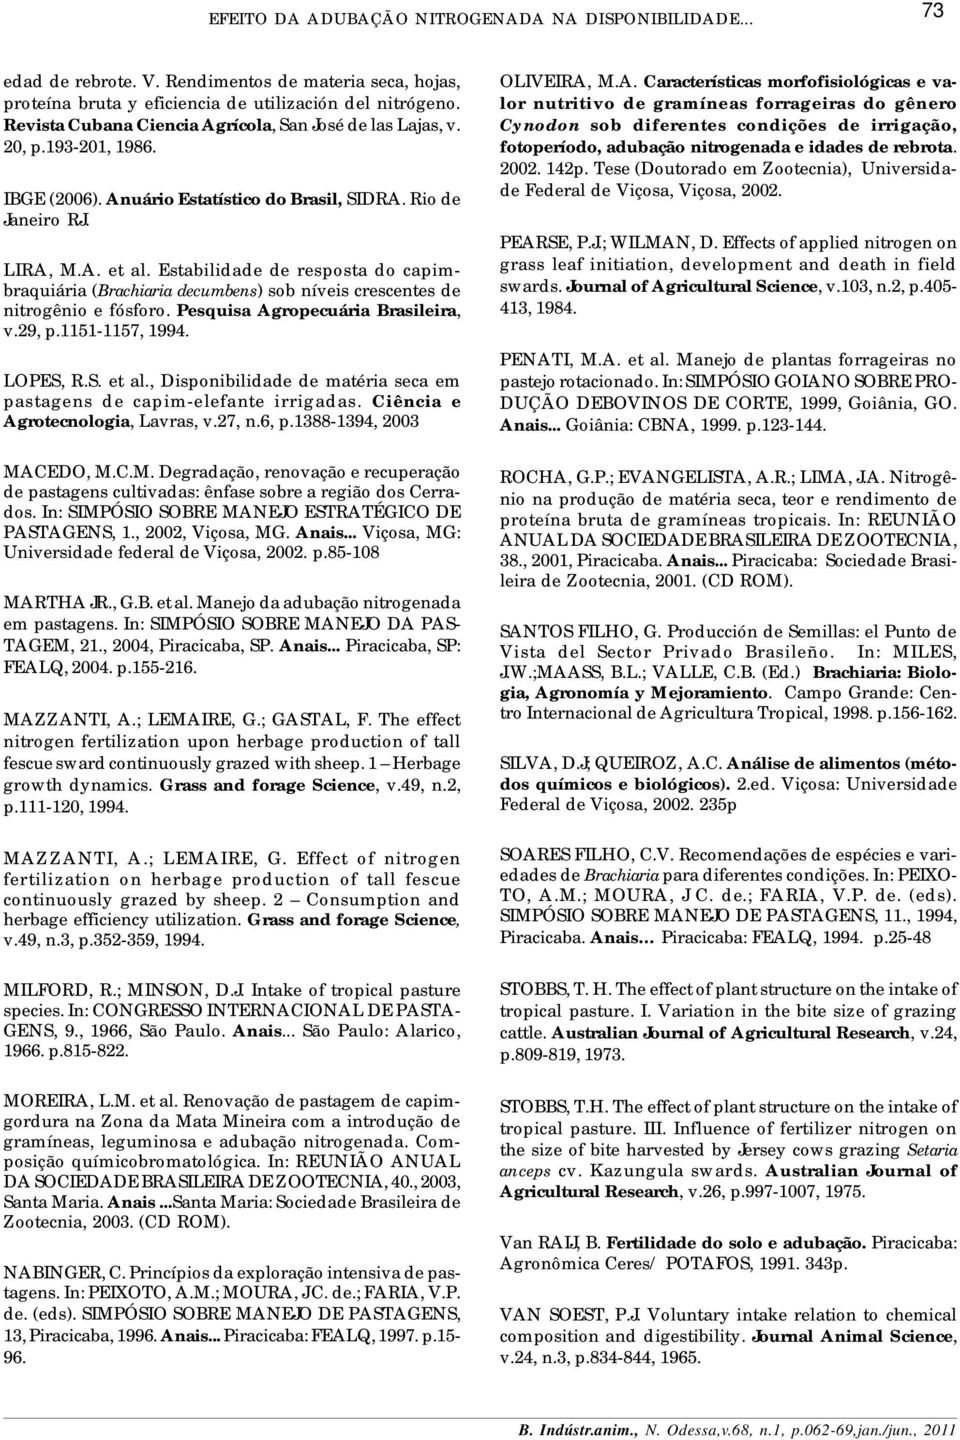 Estabilidade de resposta do capimbraquiária (Brachiaria decumbens) sob níveis crescentes de nitrogênio e fósforo. Pesquisa Agropecuária Brasileira, v.29, p.1151-1157, 1994. LOPES, R.S. et al.